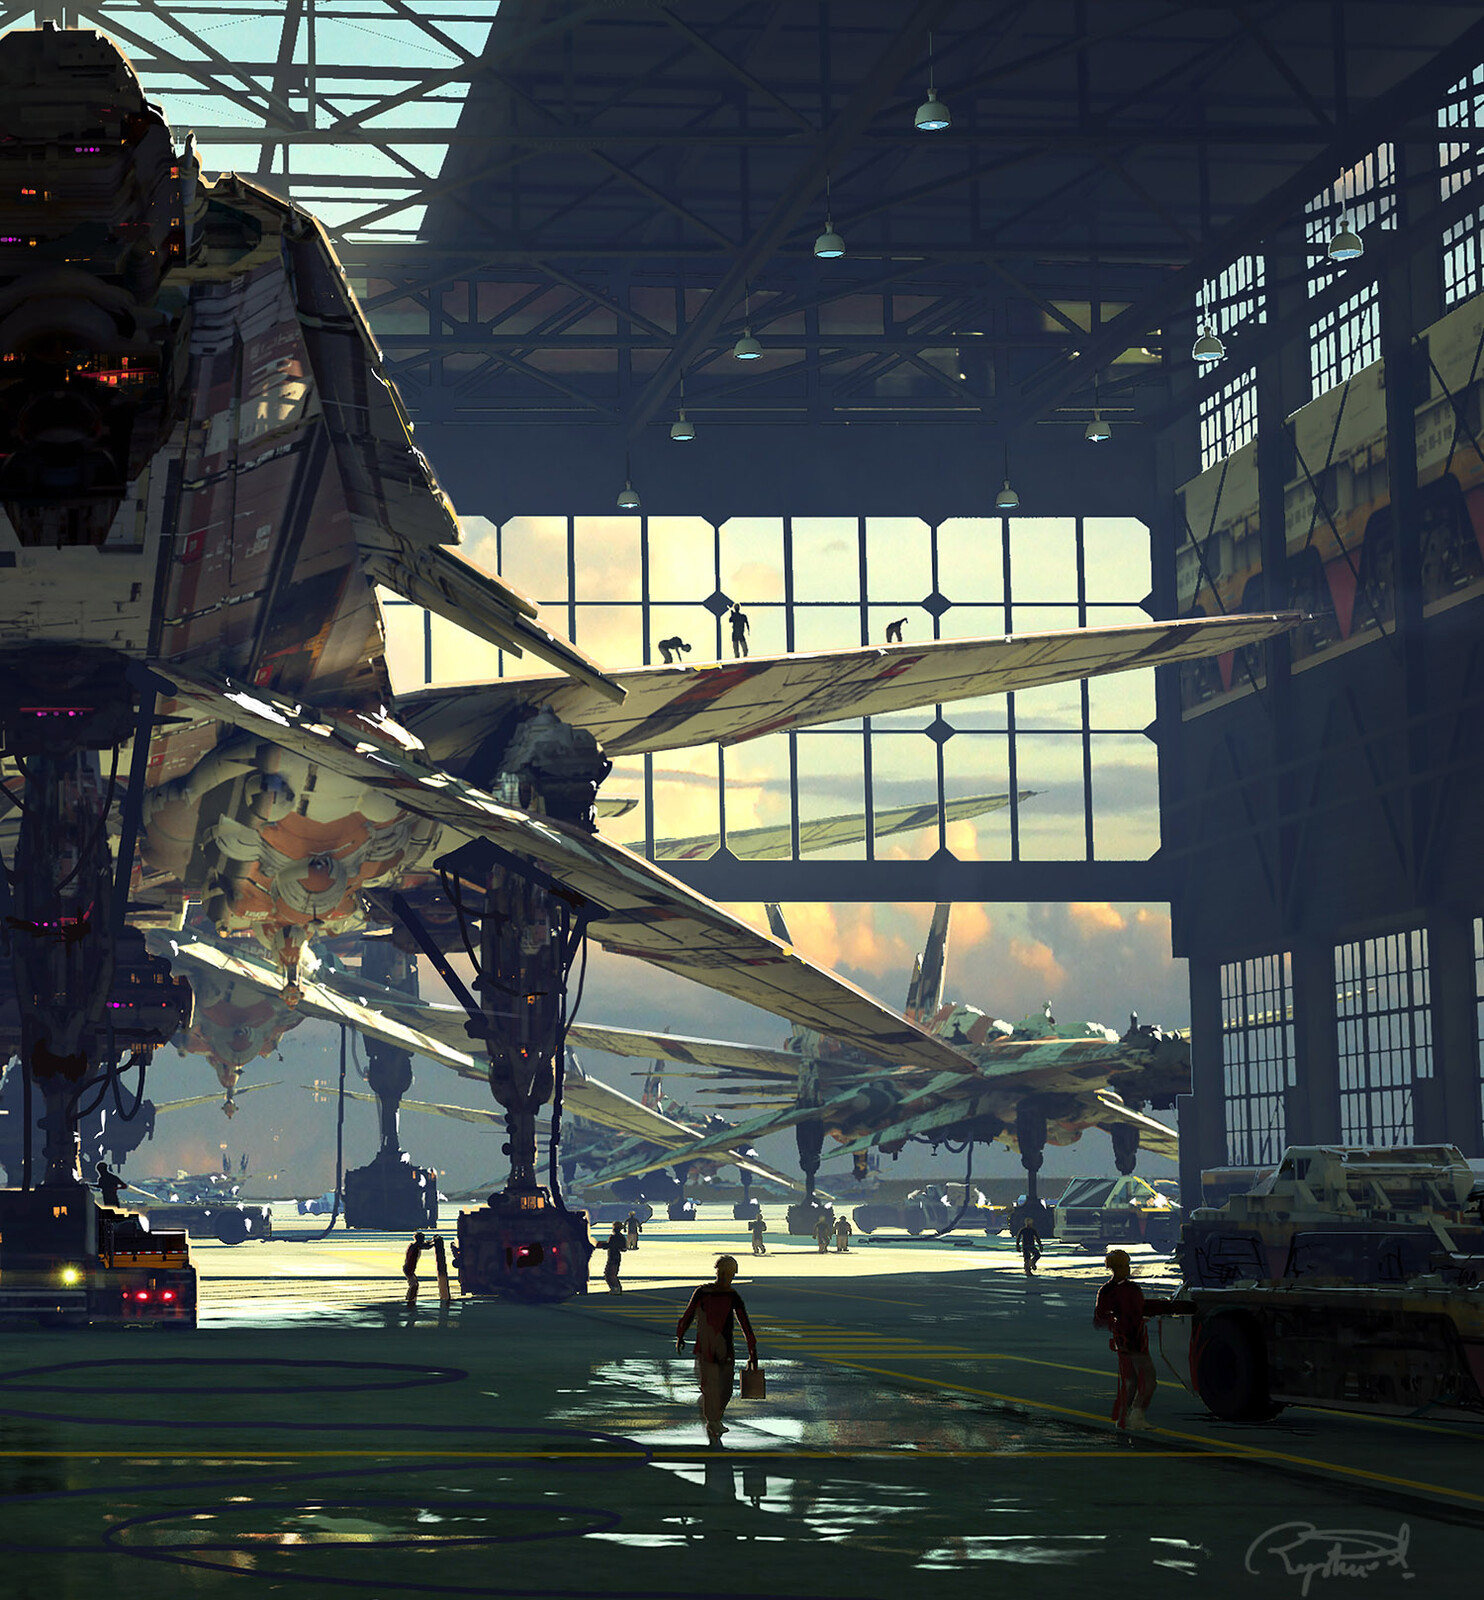 B19 Fleet (Hangar Scene) -Details